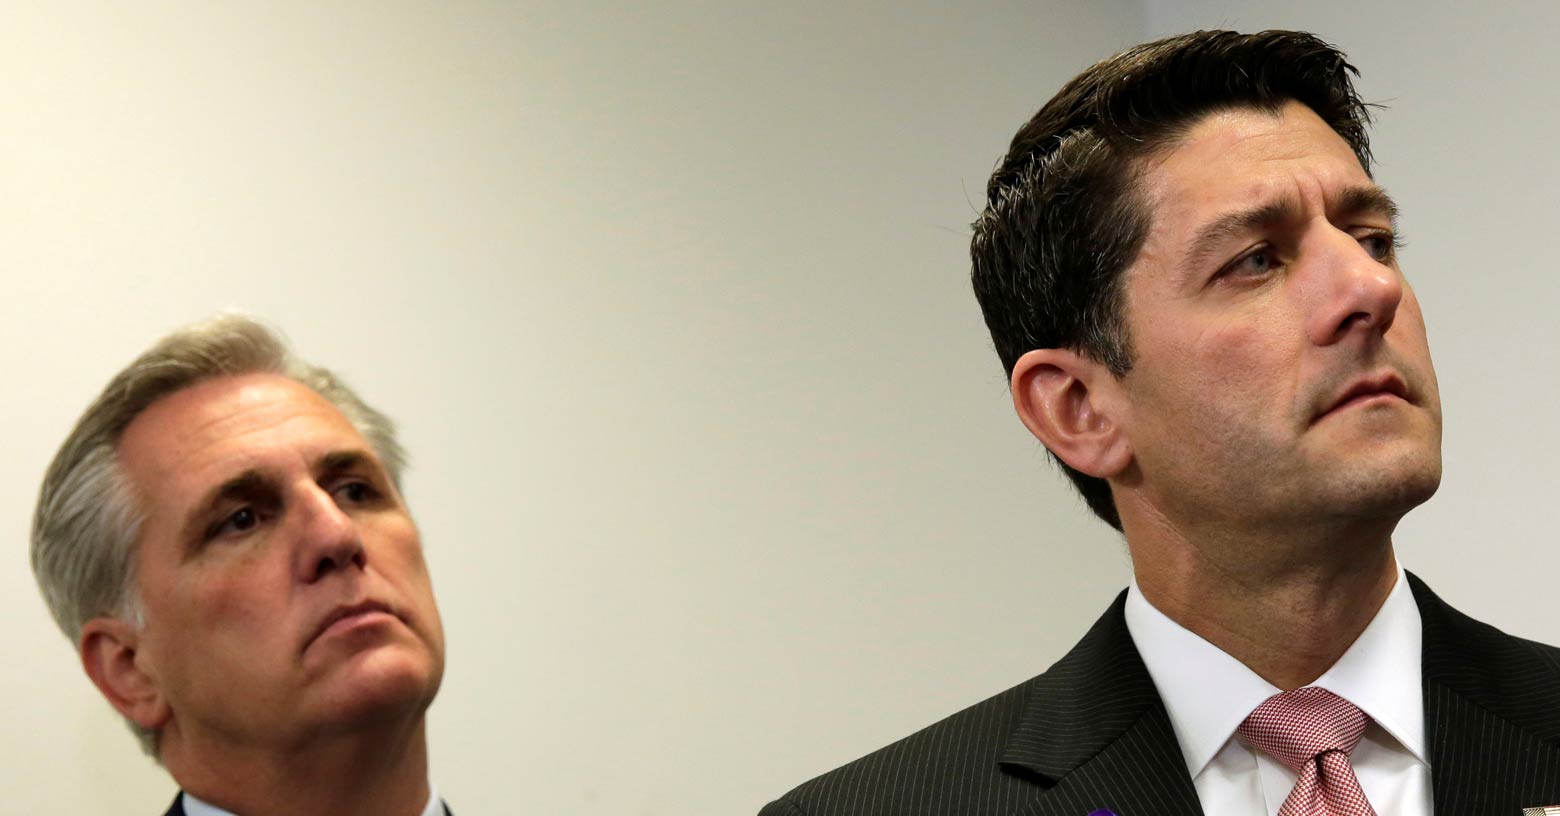 Paul Ryan -- got lies on ACA repeal